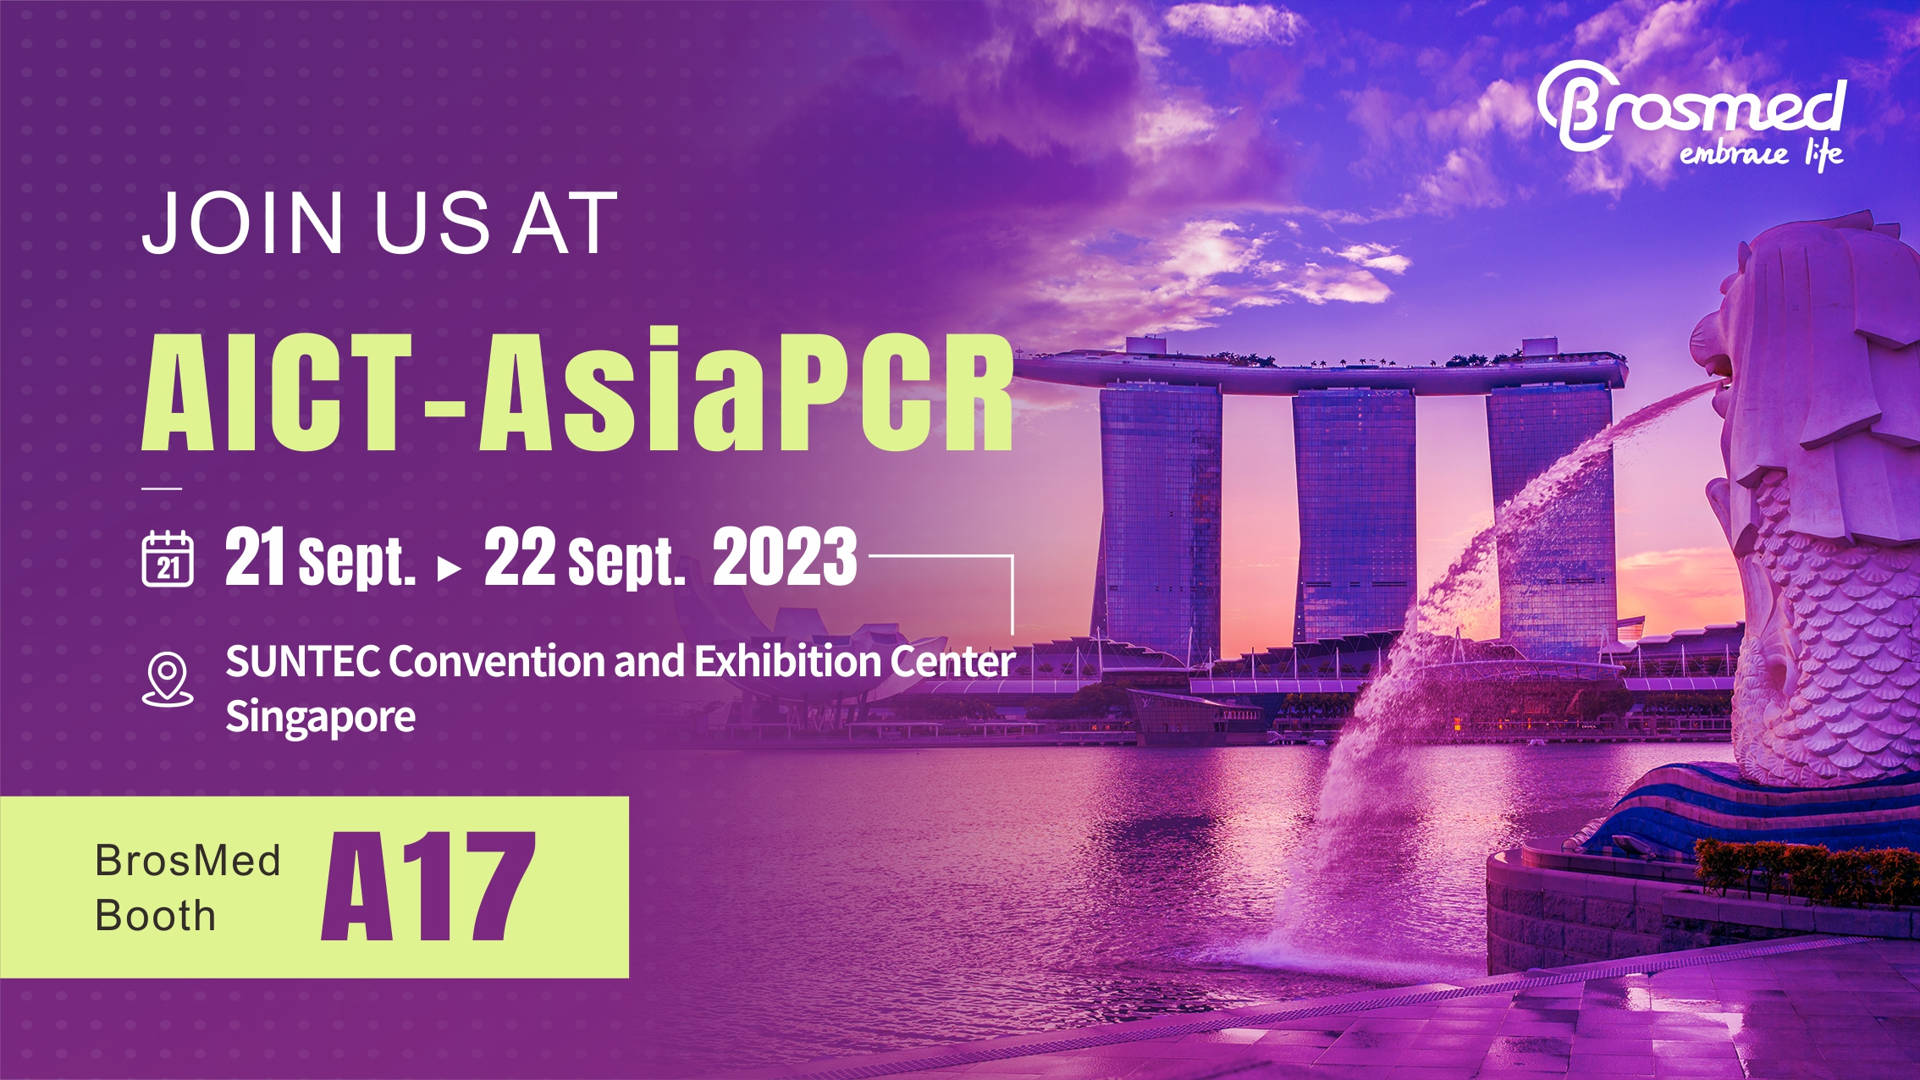 Meet BrosMed at AICT-AsiaPCR 2023